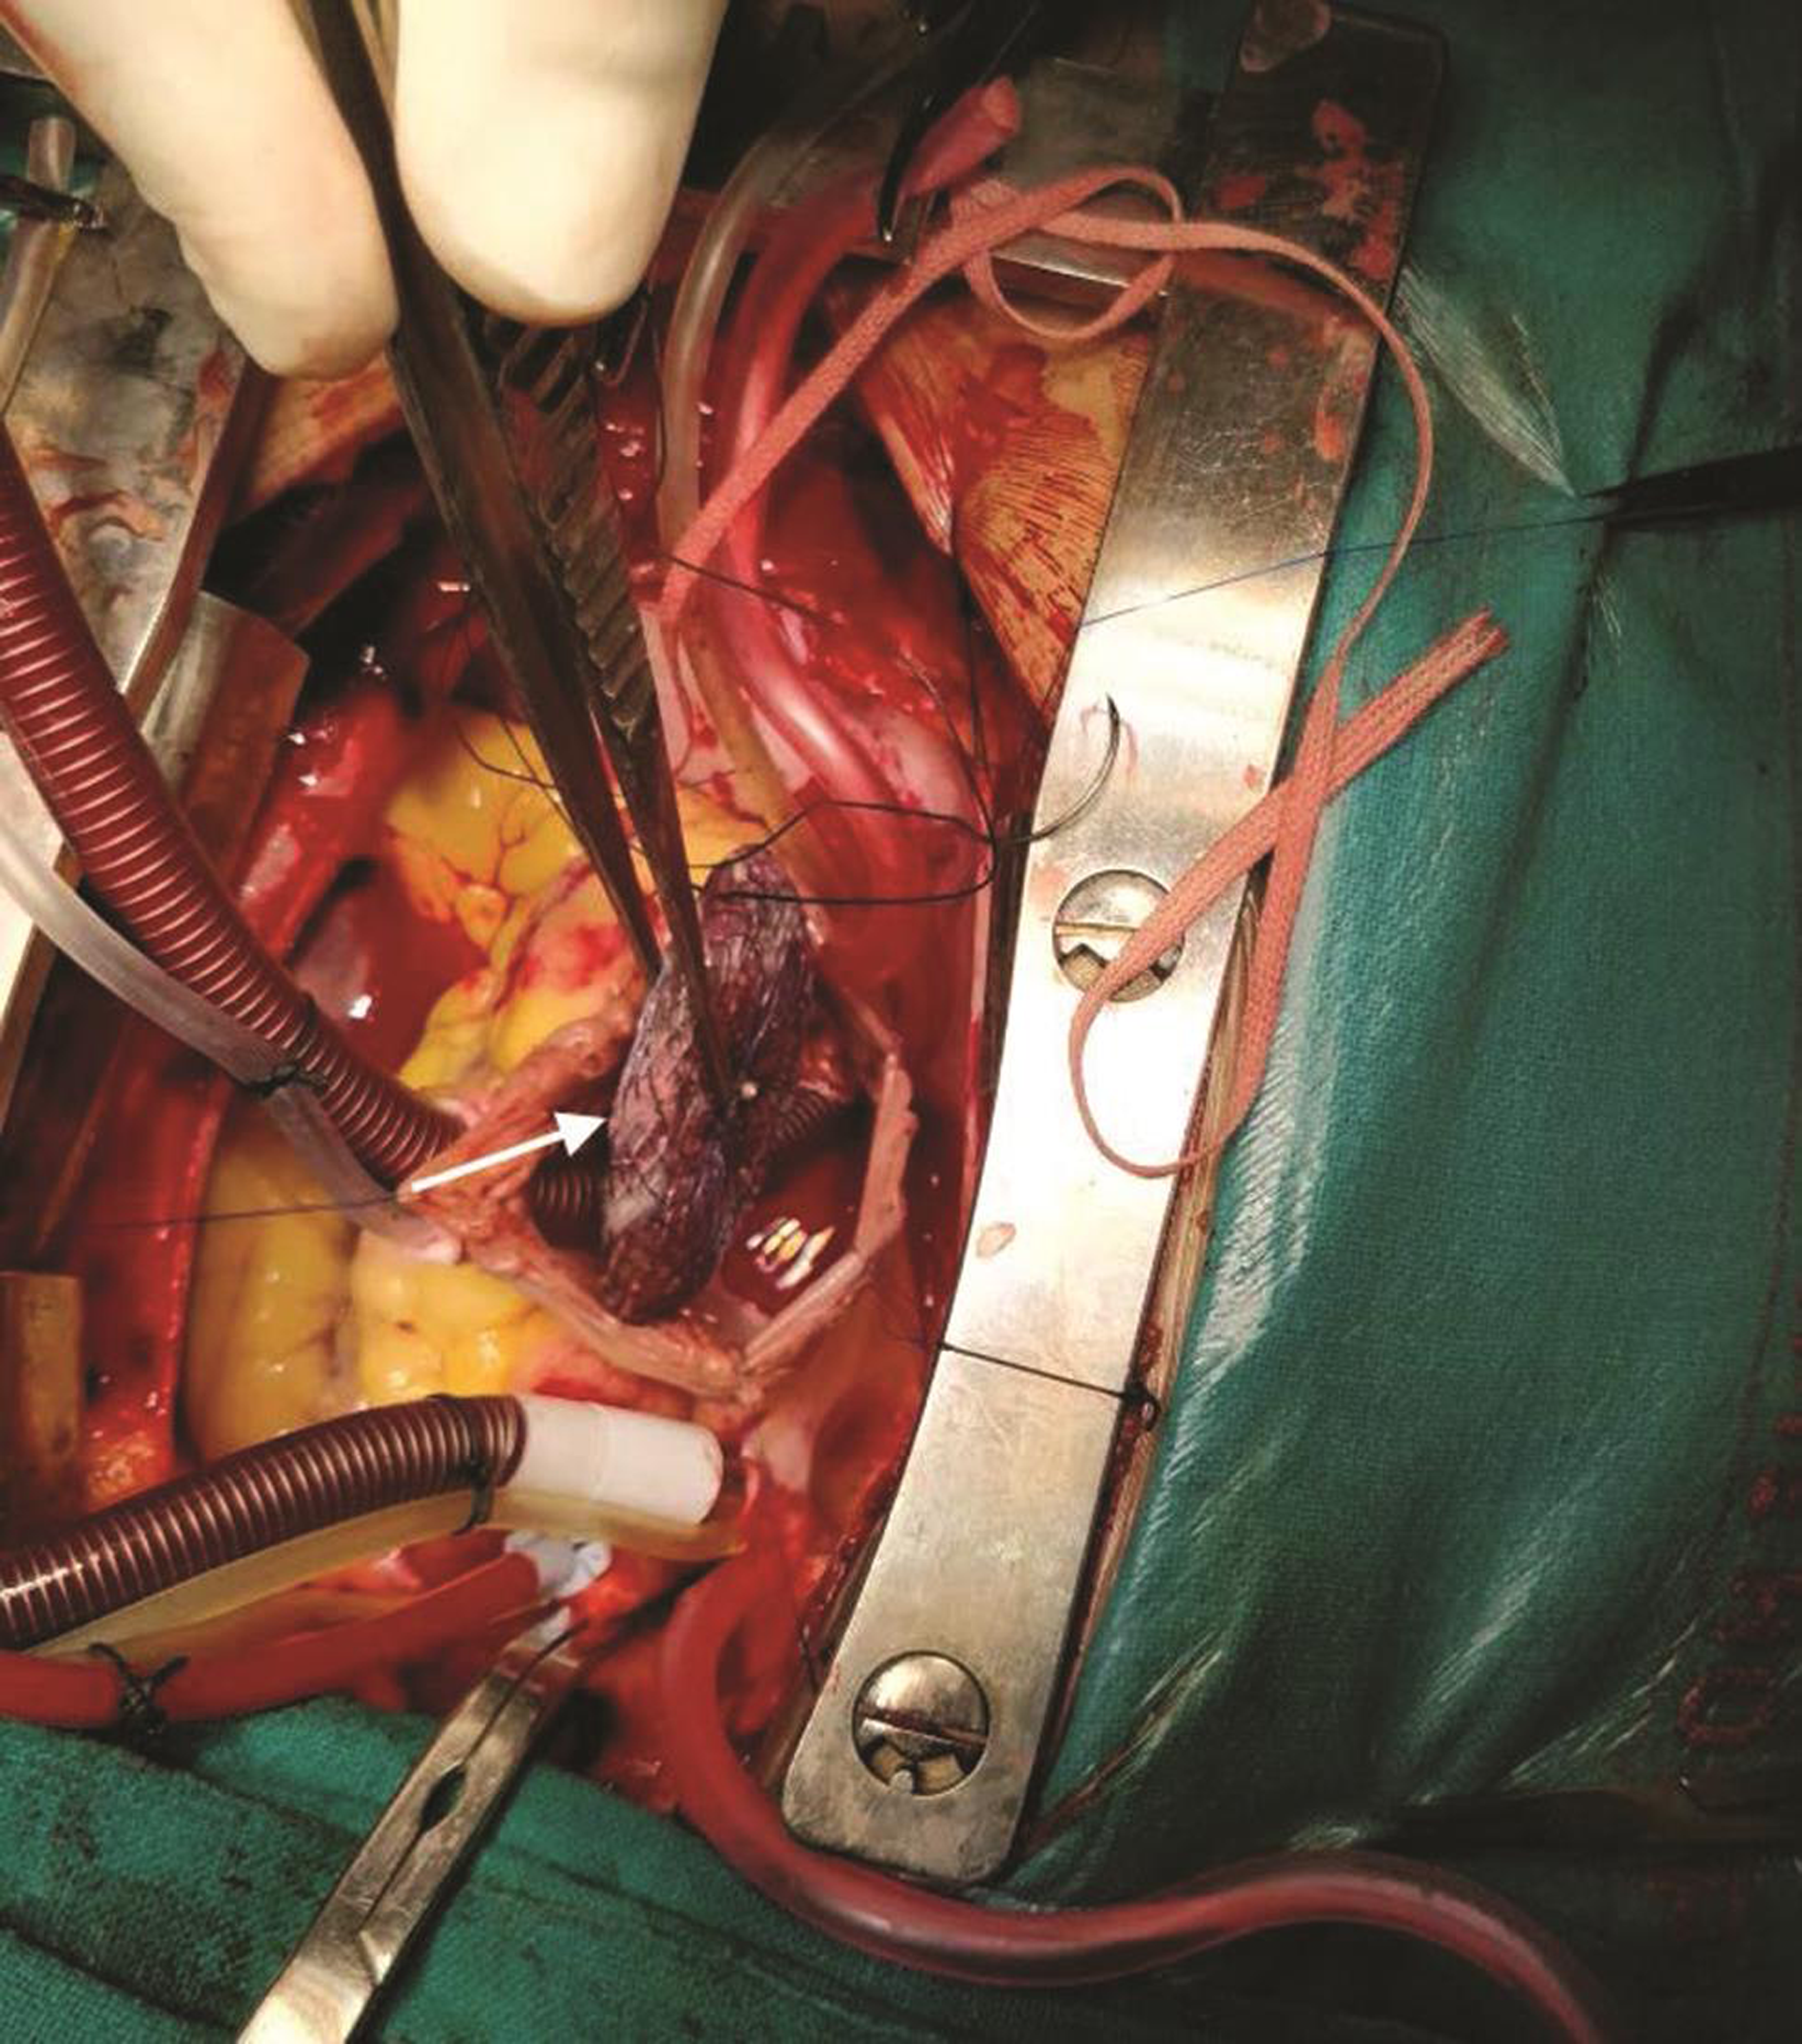 Surgical retrieval of Amplatzer atrial septal defect device occluder (arrow).